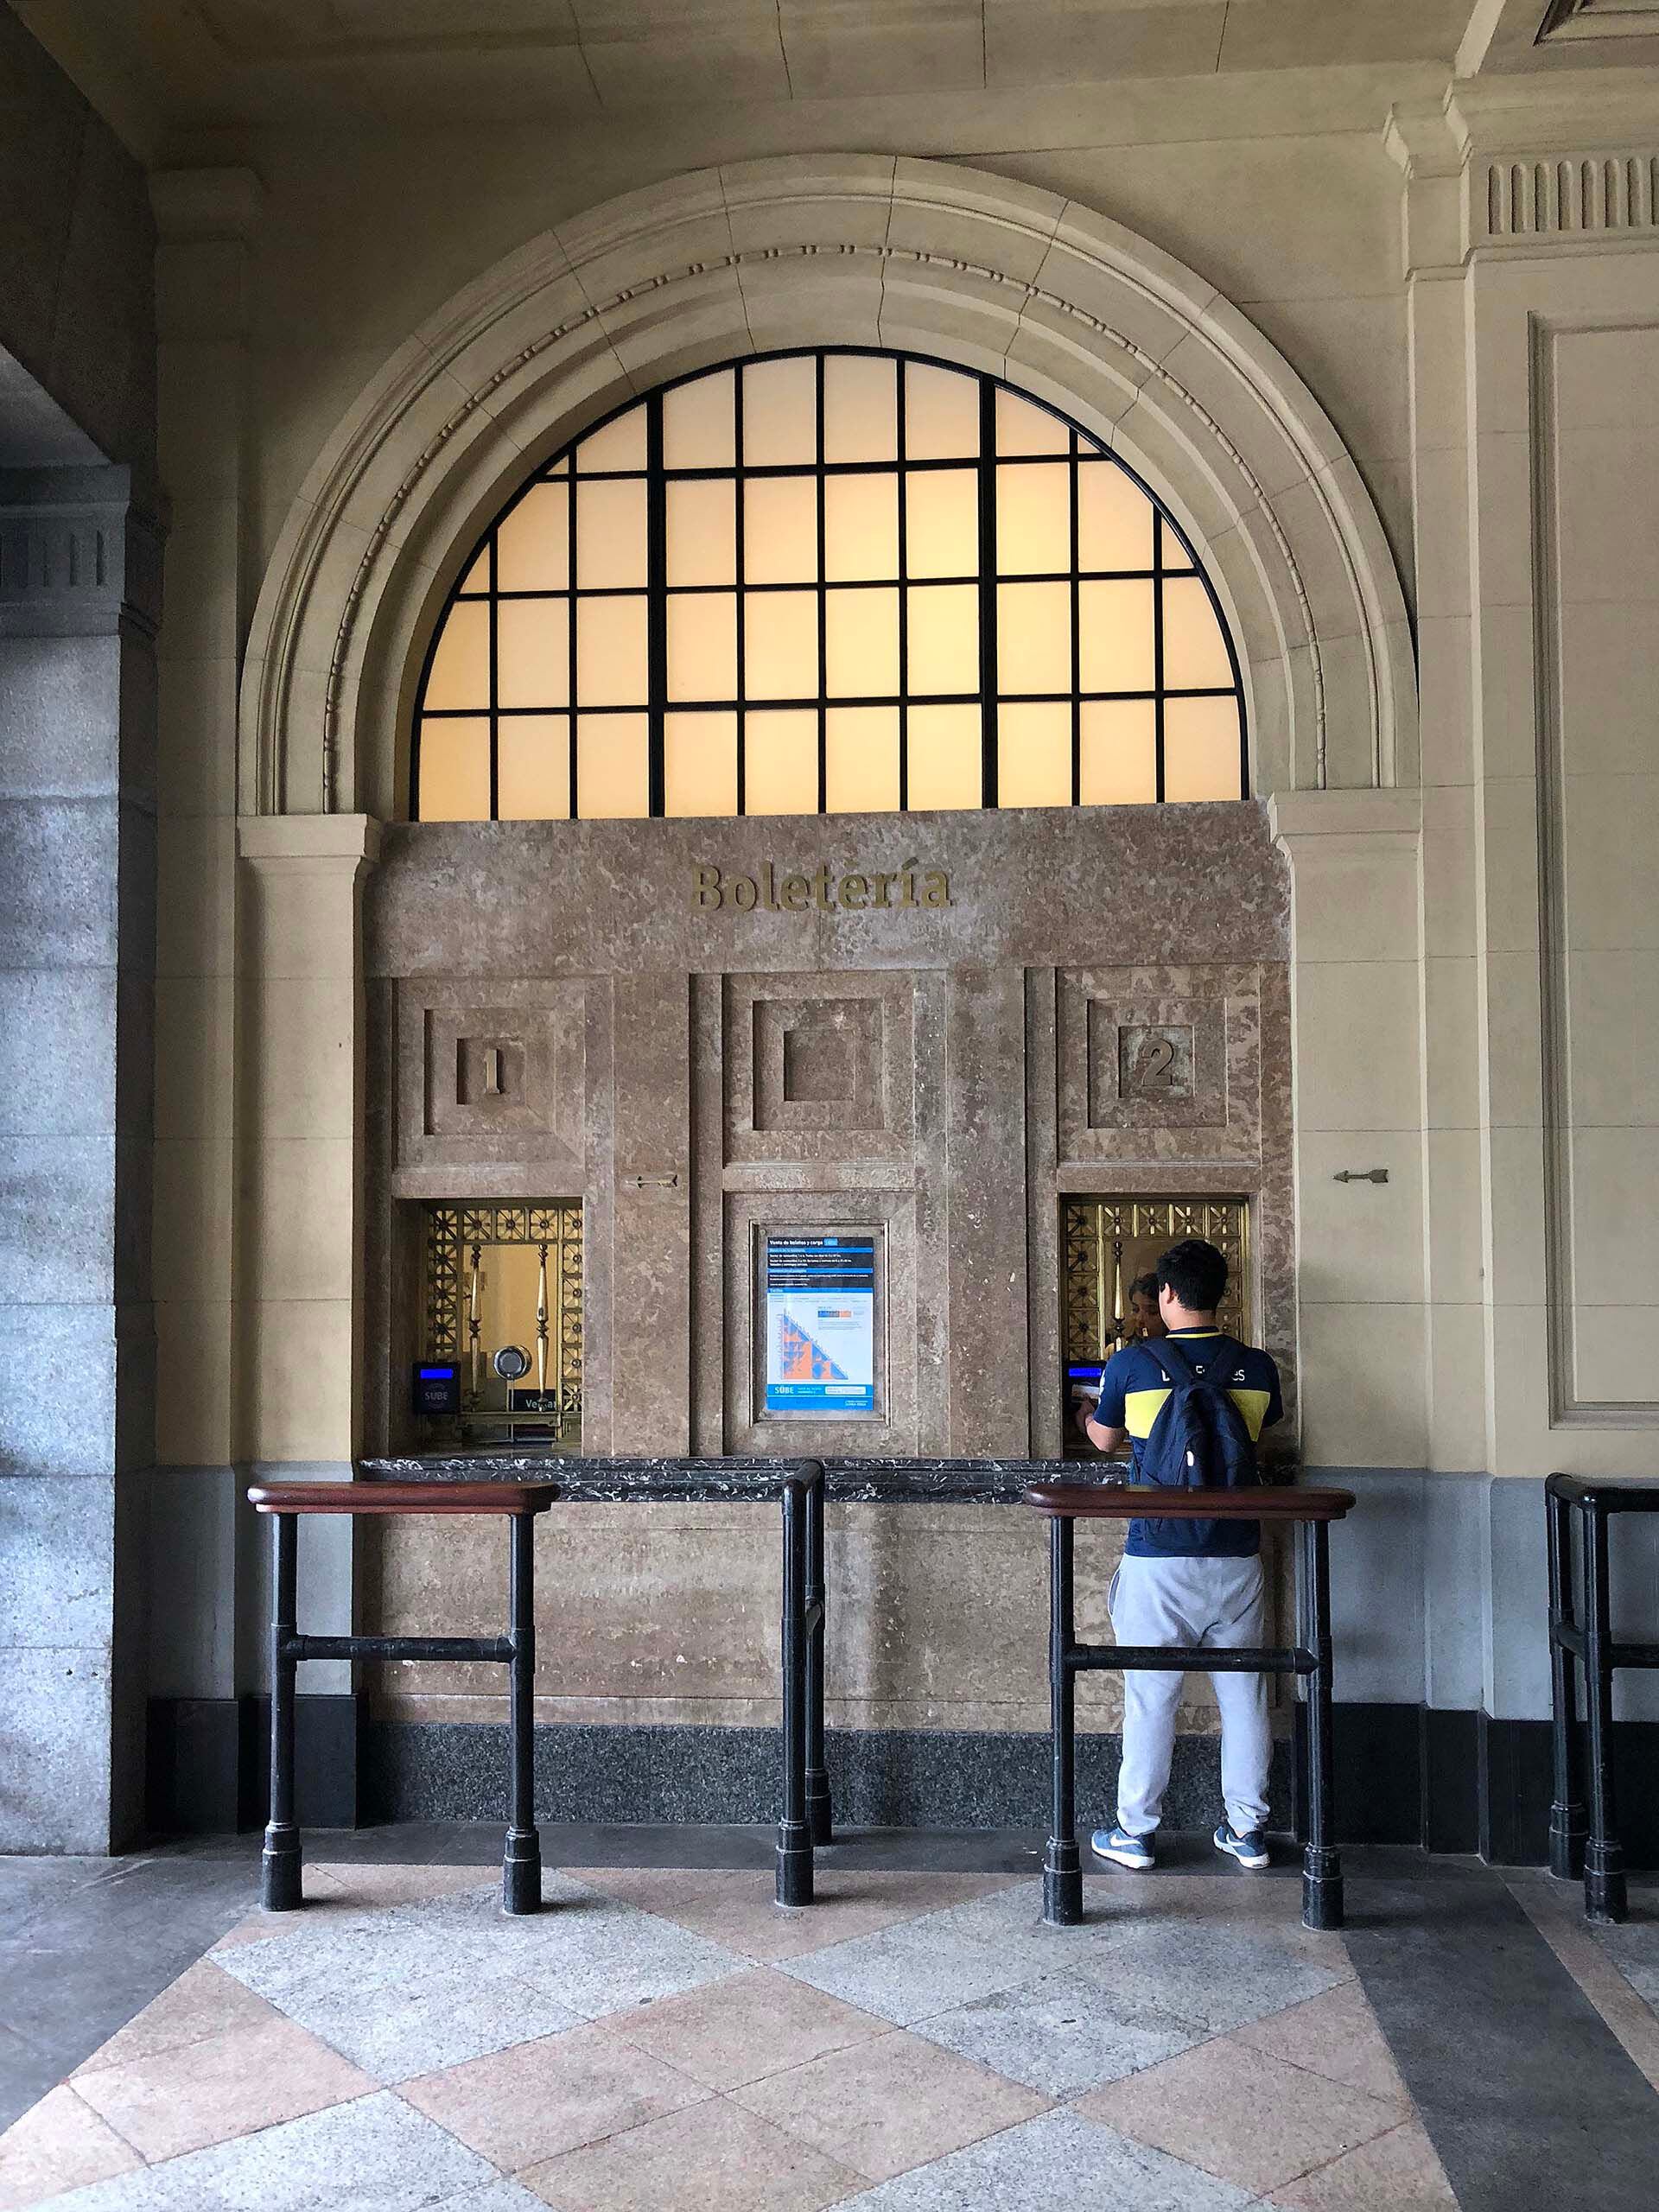 Estación Constitución, un domingo por la tarde, un hincha de Boca carga su SUBE para ir a la Bombonera. Una imagen clásica que descubre además la identidad futbolera del artista